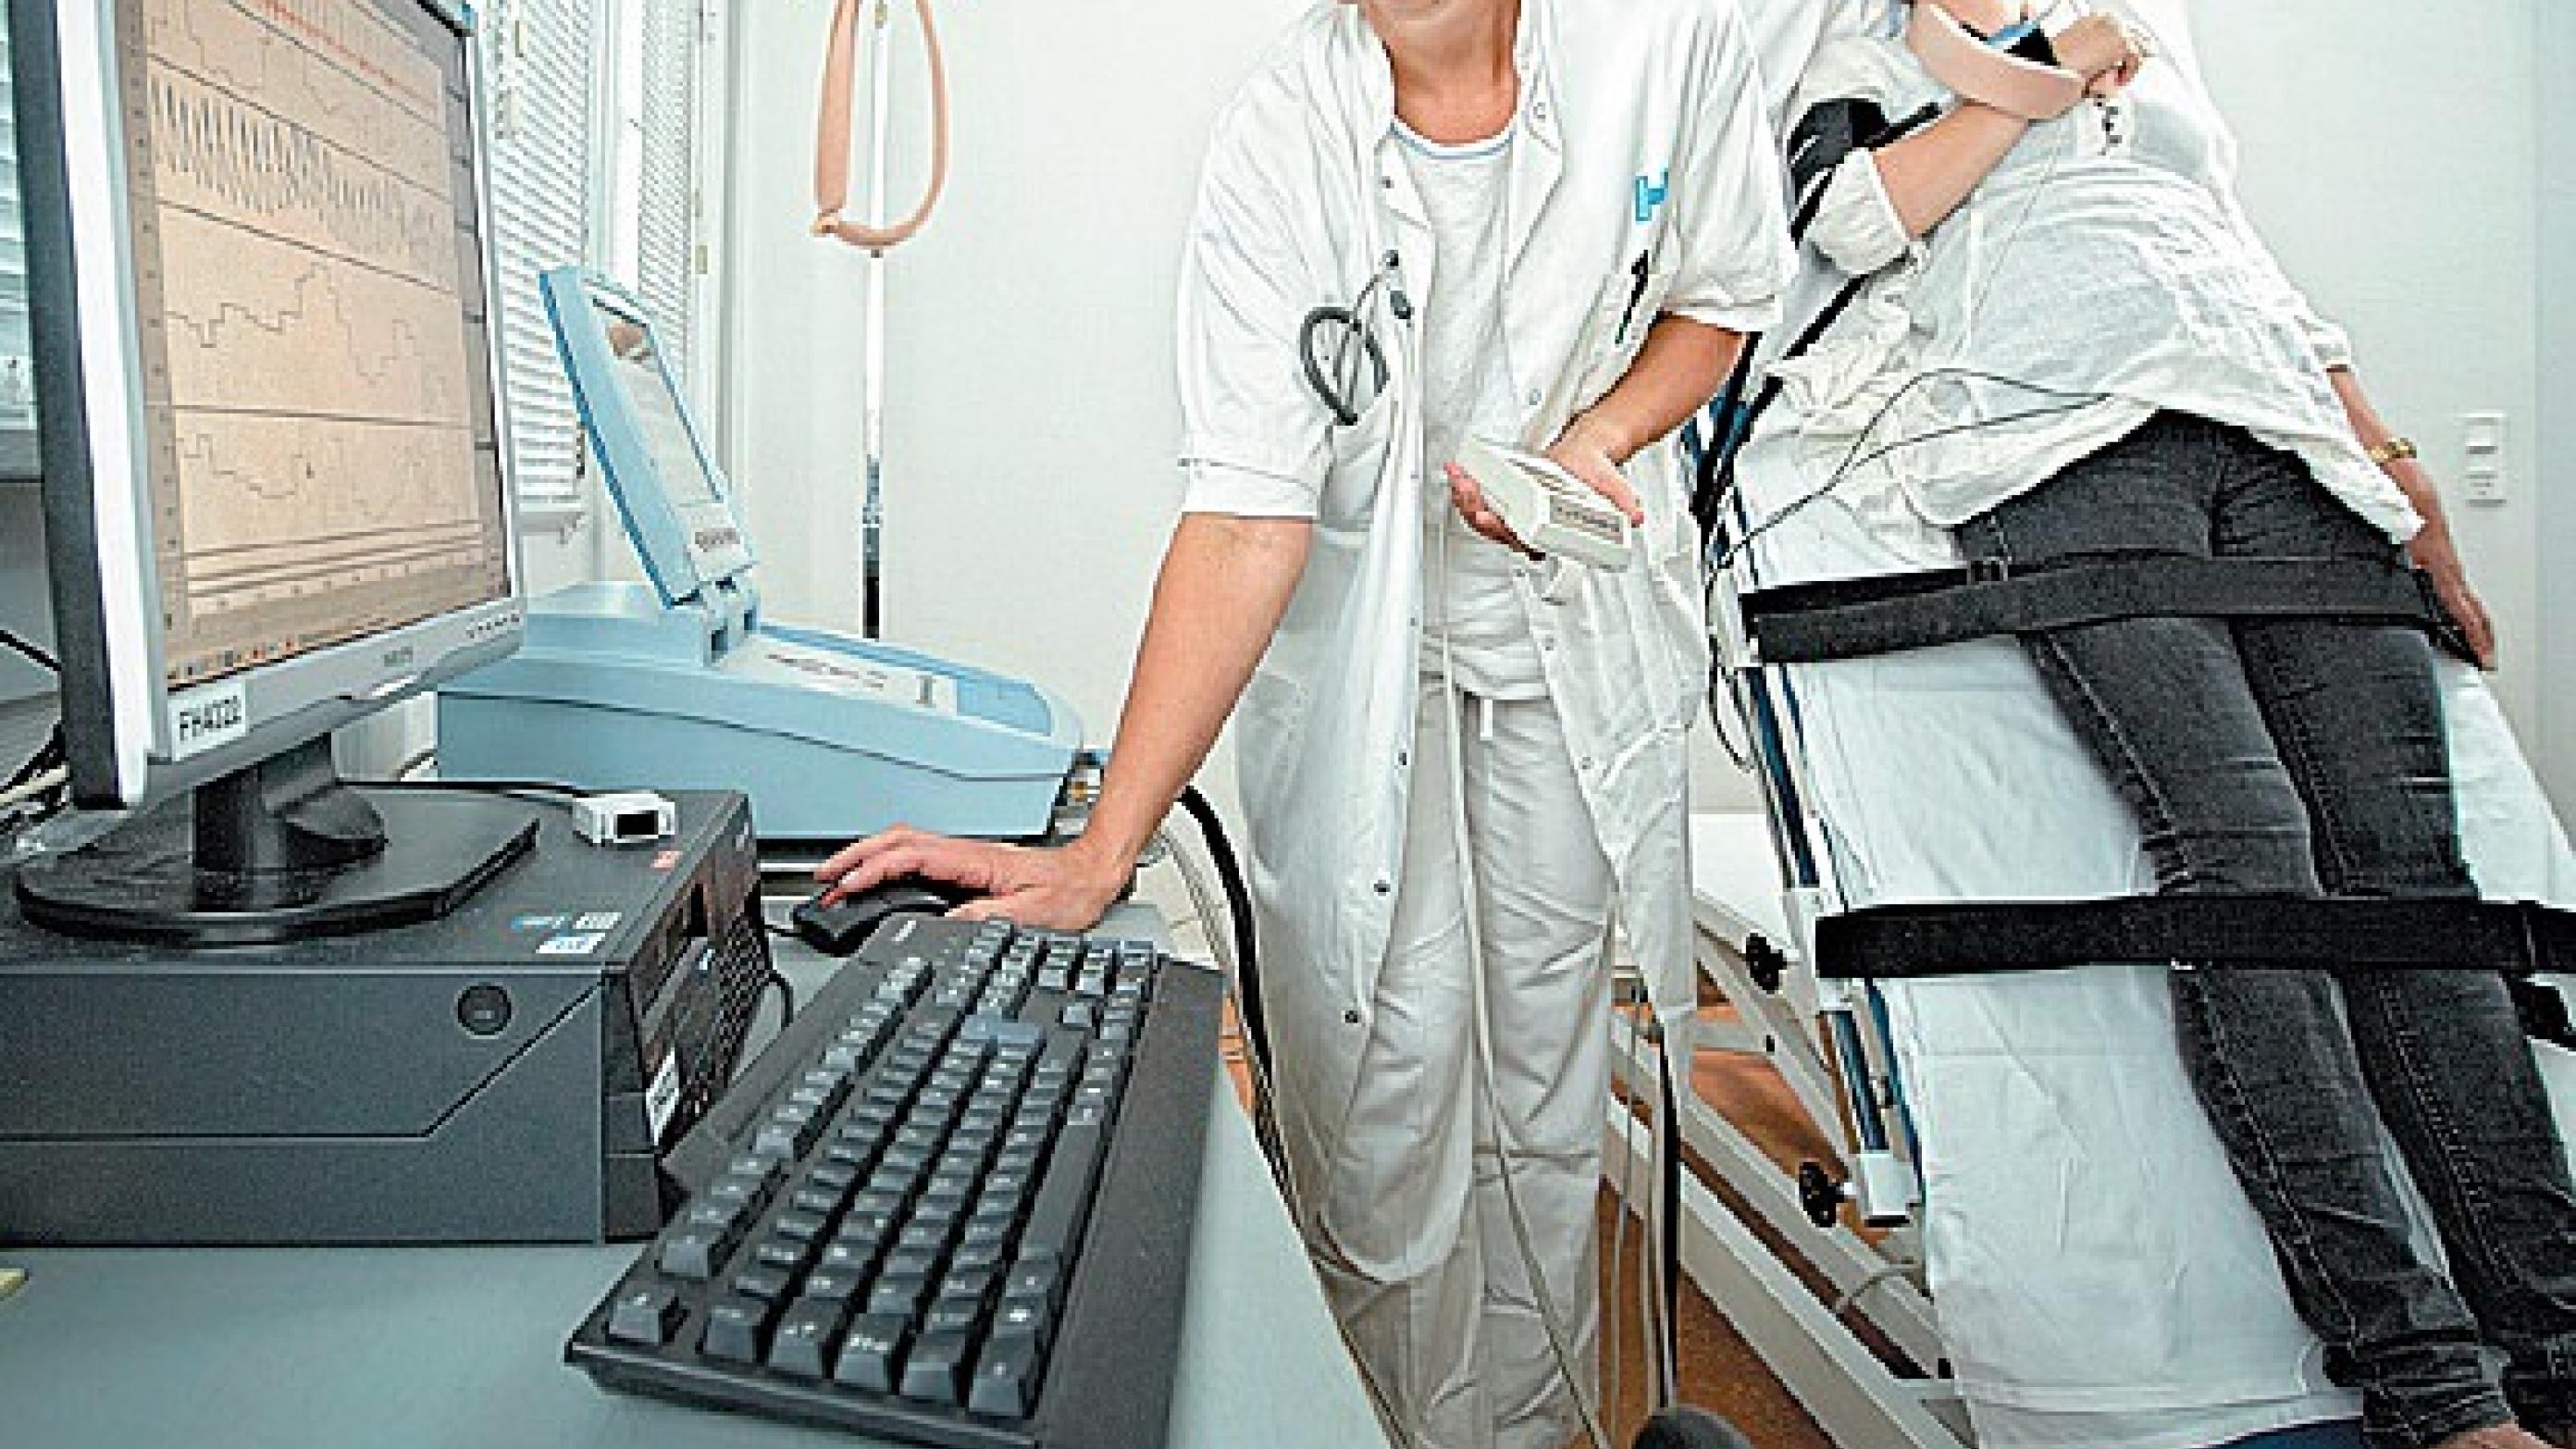 Vippelejetest. Puls og blodtryk monitoreres kontinuert med patienten i liggende hvile og med lejet vippet til 60°. (Foto: Claus Peuckert).